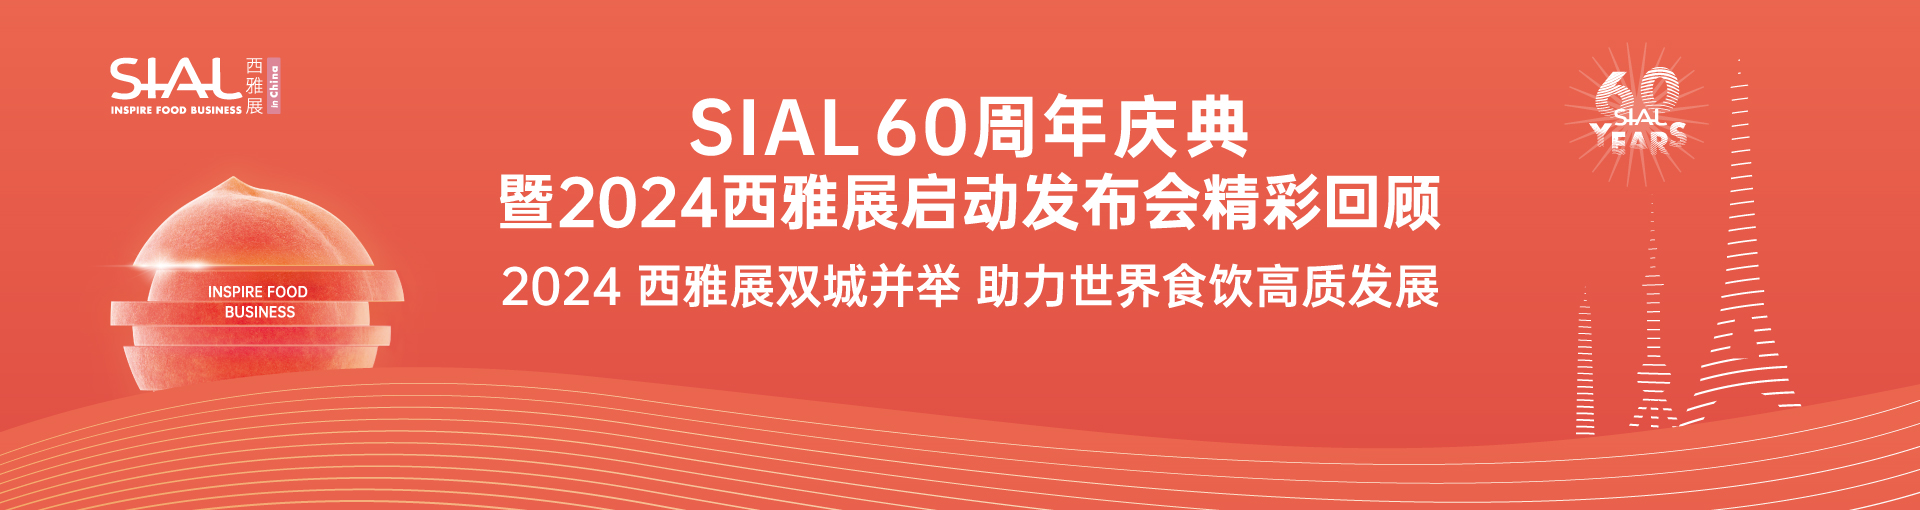 60周年北京启动发布会